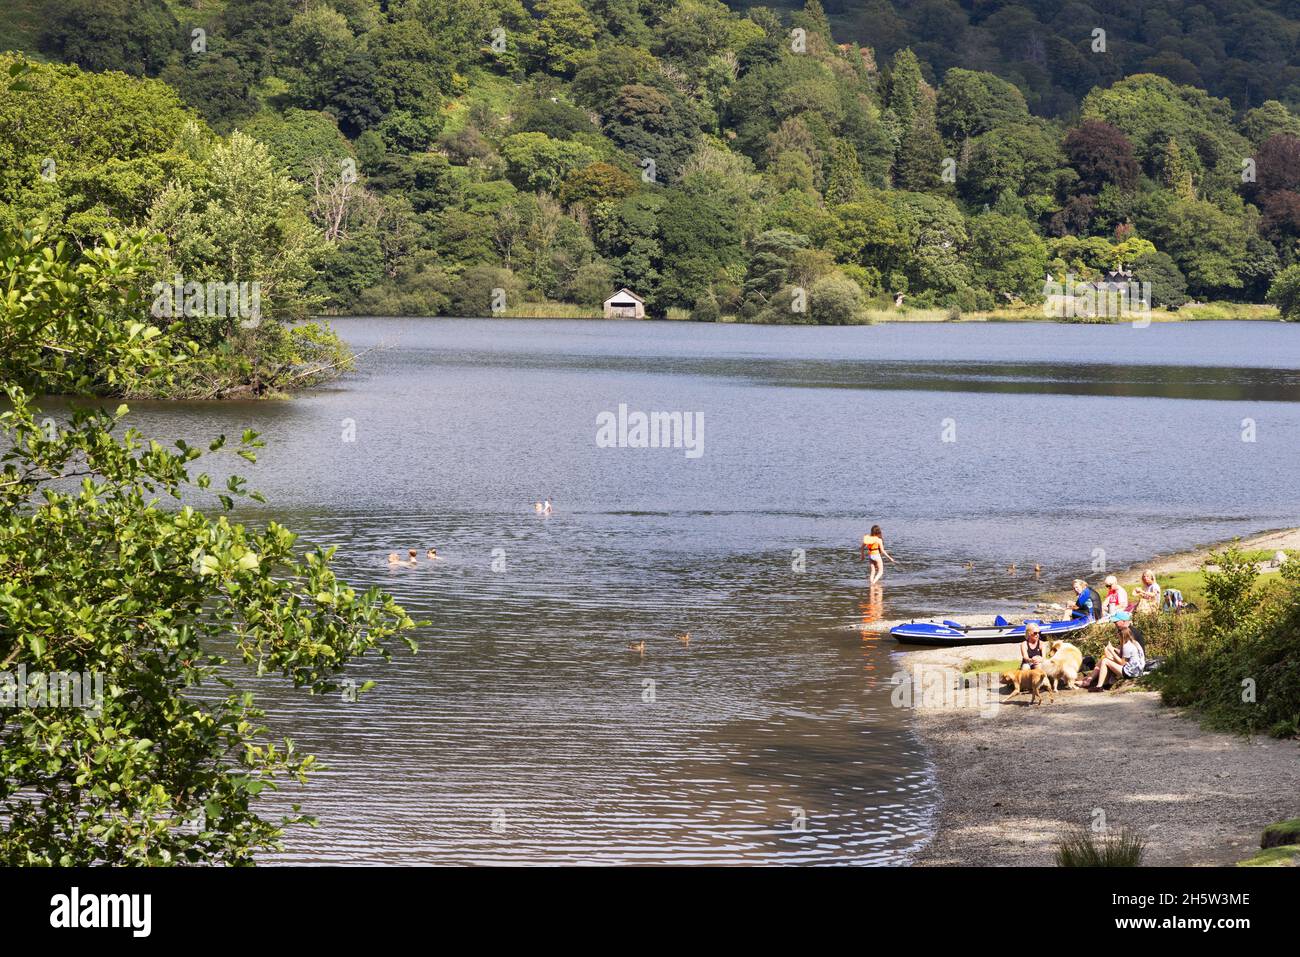 Vacanze in famiglia Regno Unito; persone che nuotano nel lago d'acqua Rydal durante le vacanze estive, il Lake District Cumbria Inghilterra Regno Unito Foto Stock